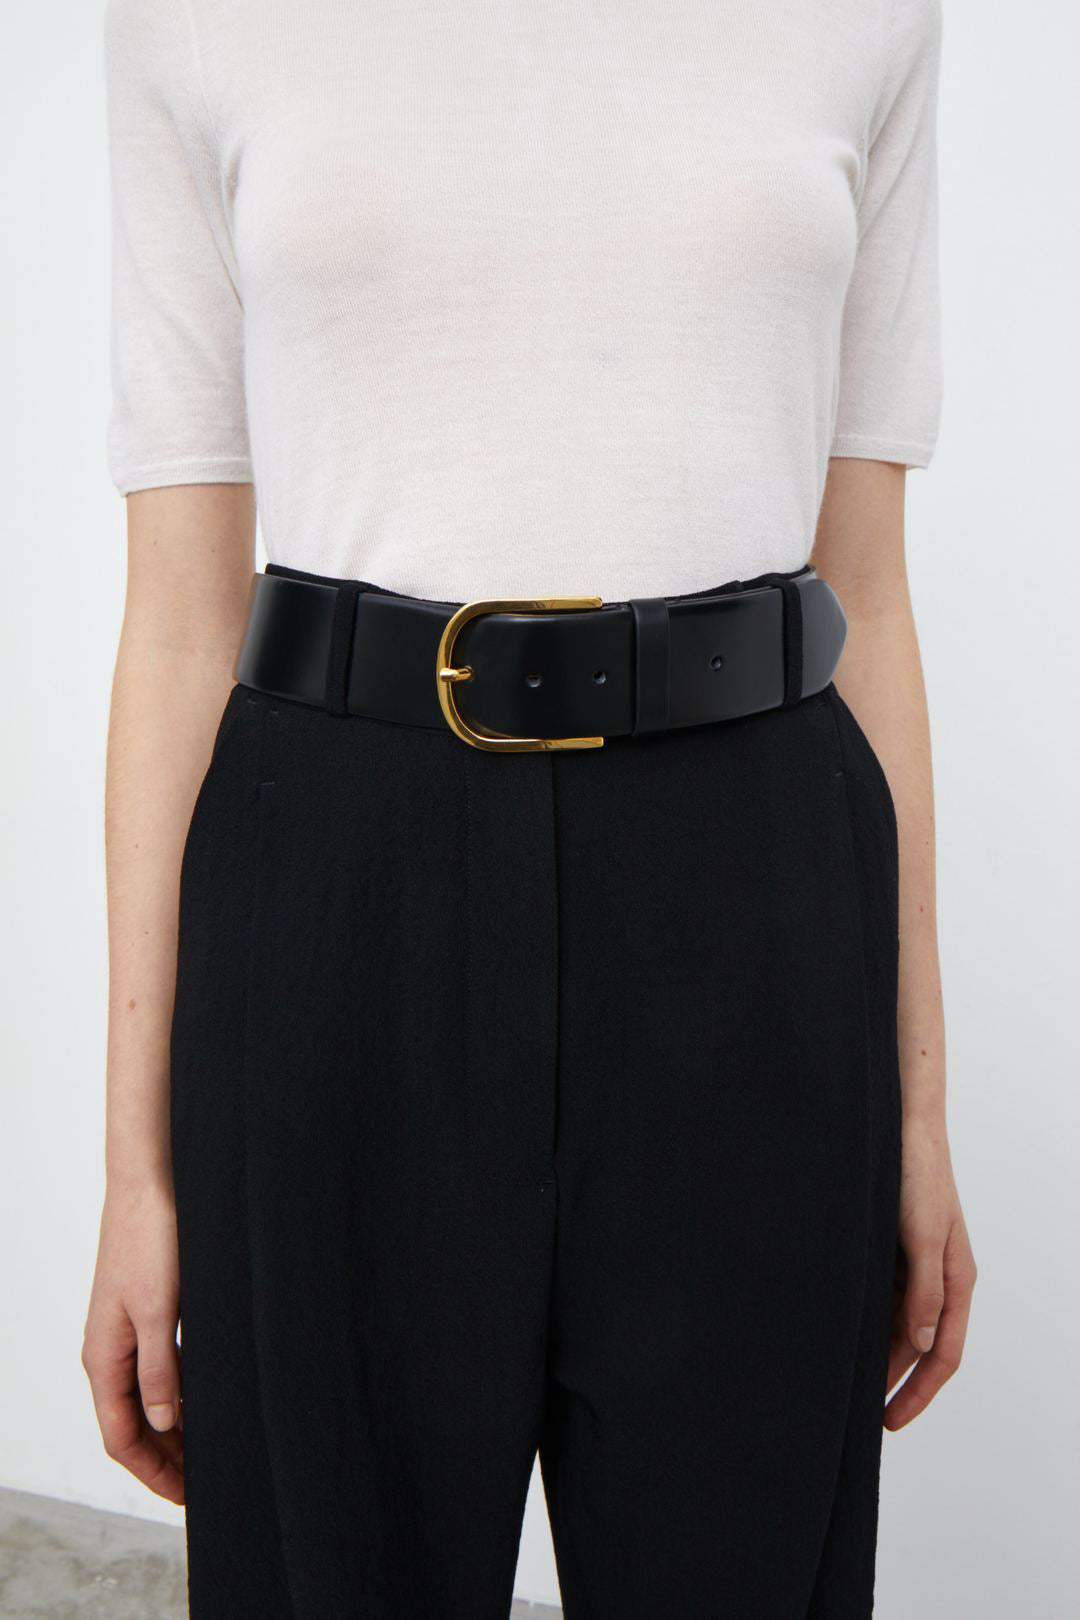 in – Black Trouser Wide Belt